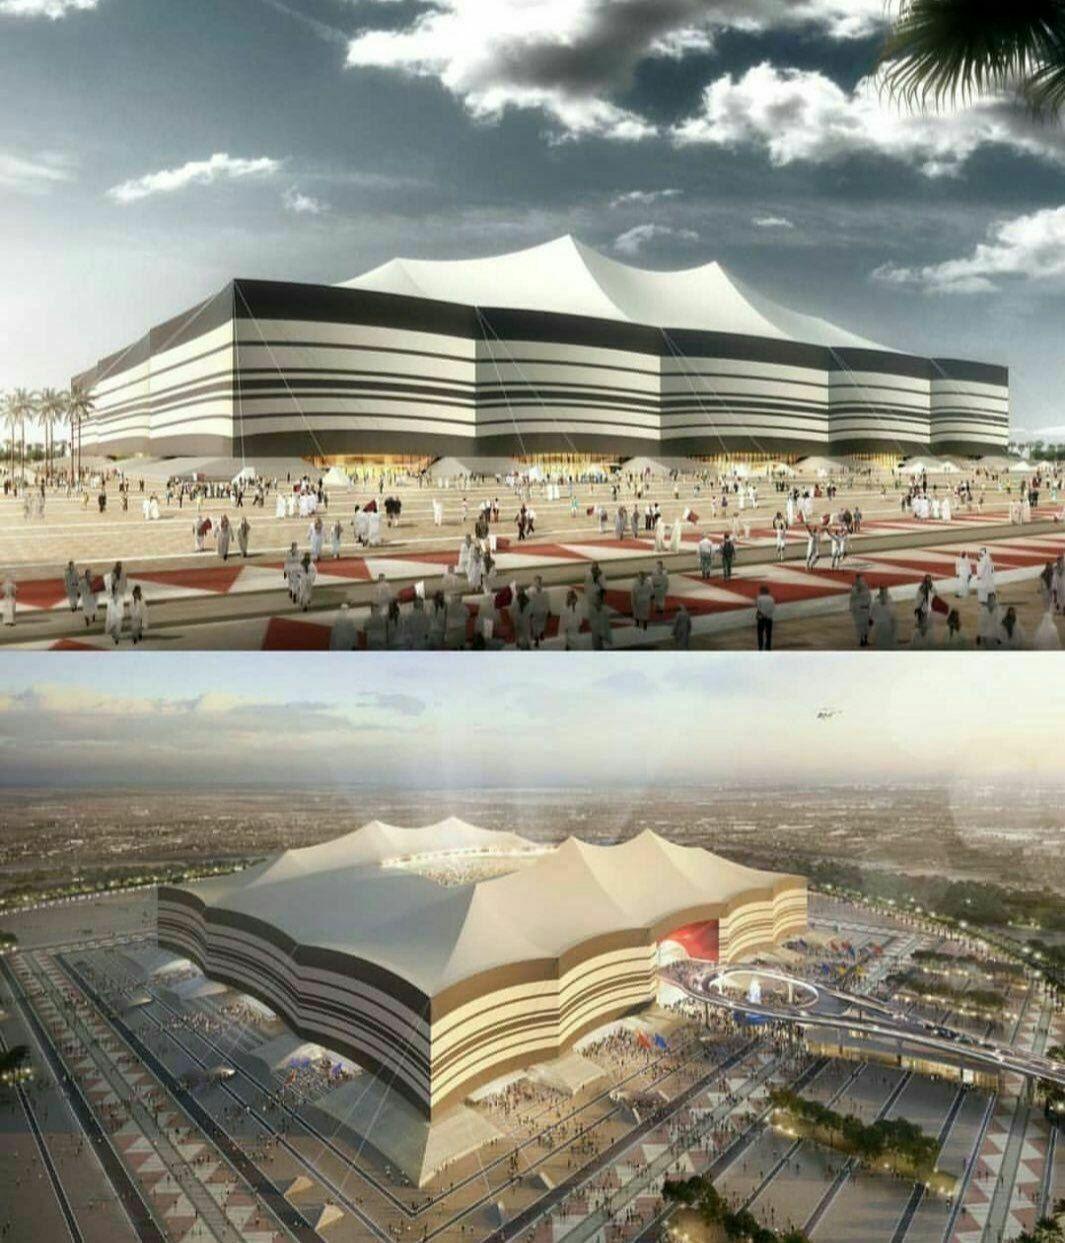 ساخت ورزشگاه قطر به شکل خیمه اعراب  <img src="/images/video_icon.gif" width="16" height="13" border="0" align="top">